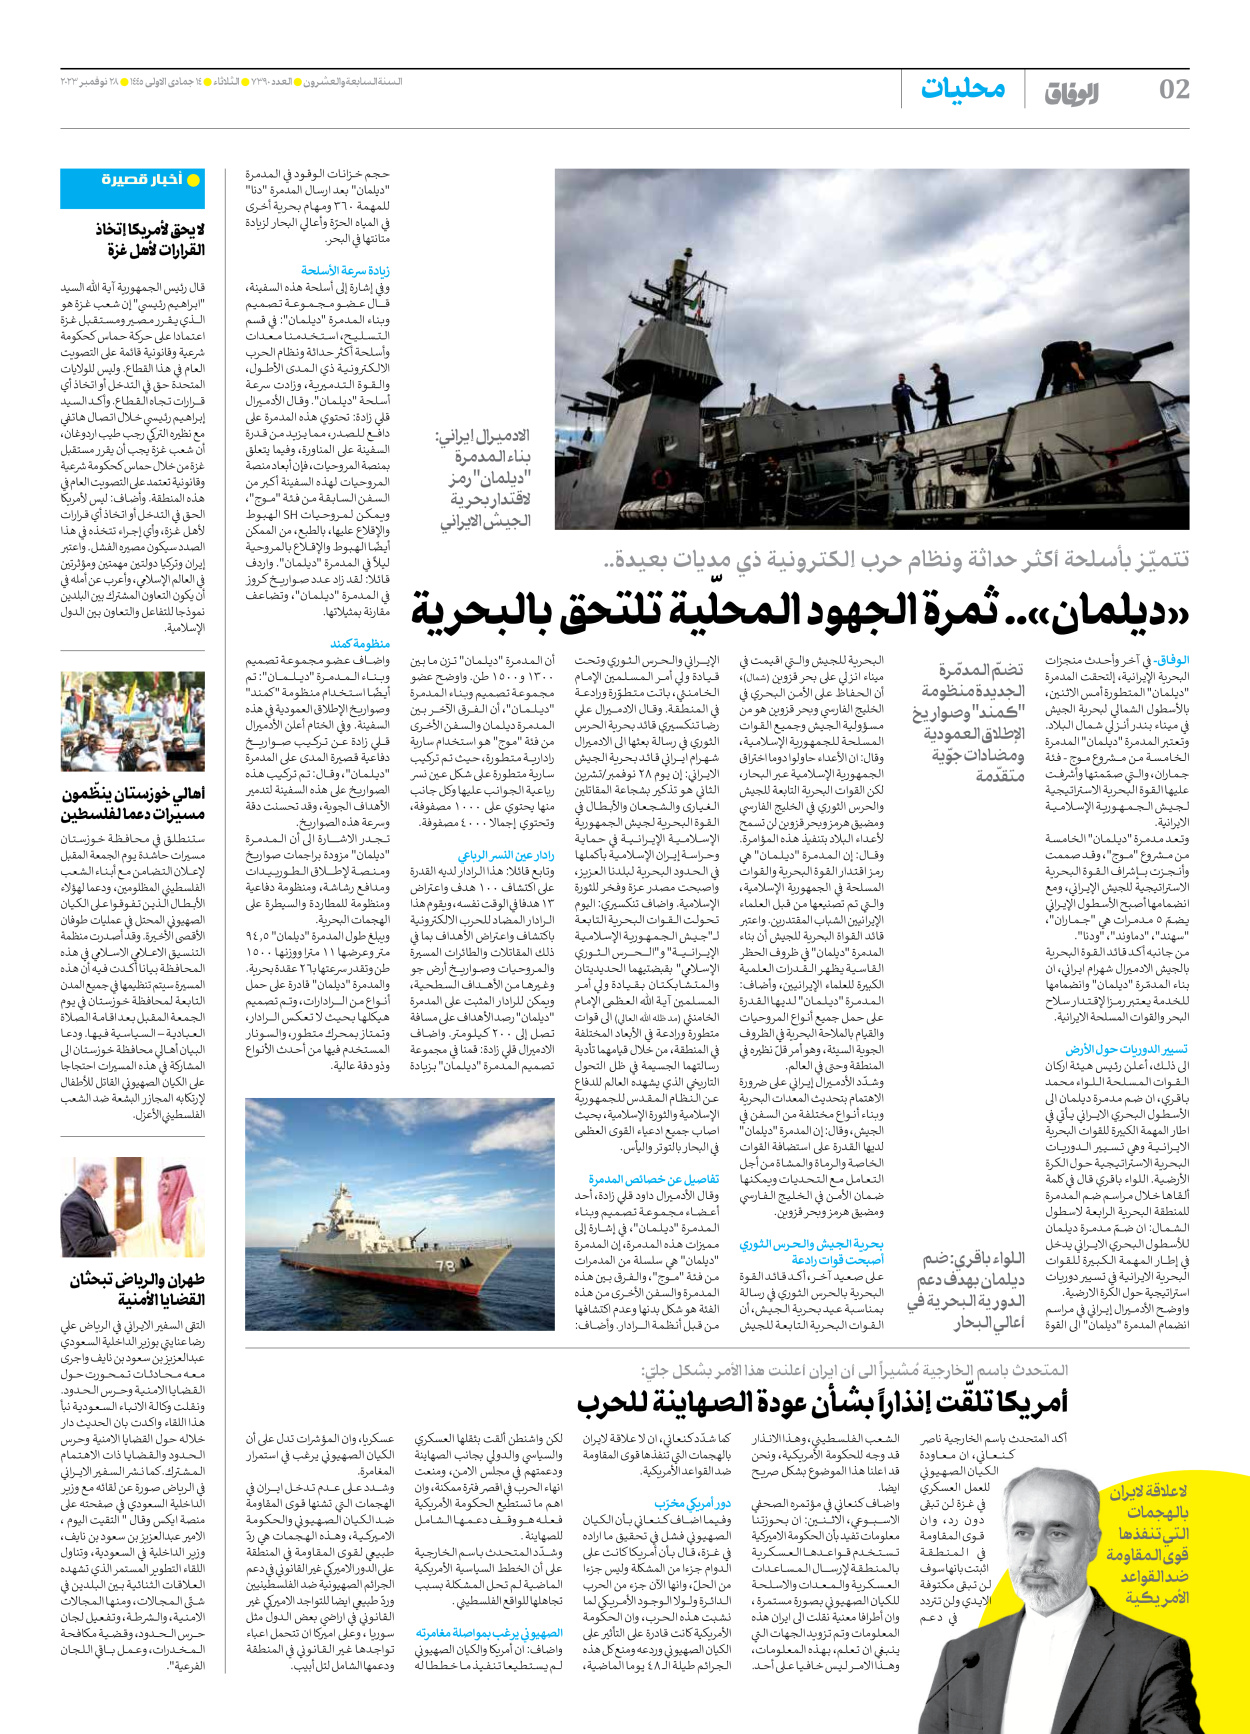 صحیفة ایران الدولیة الوفاق - العدد سبعة آلاف وثلاثمائة وتسعون - ٢٨ نوفمبر ٢٠٢٣ - الصفحة ۲